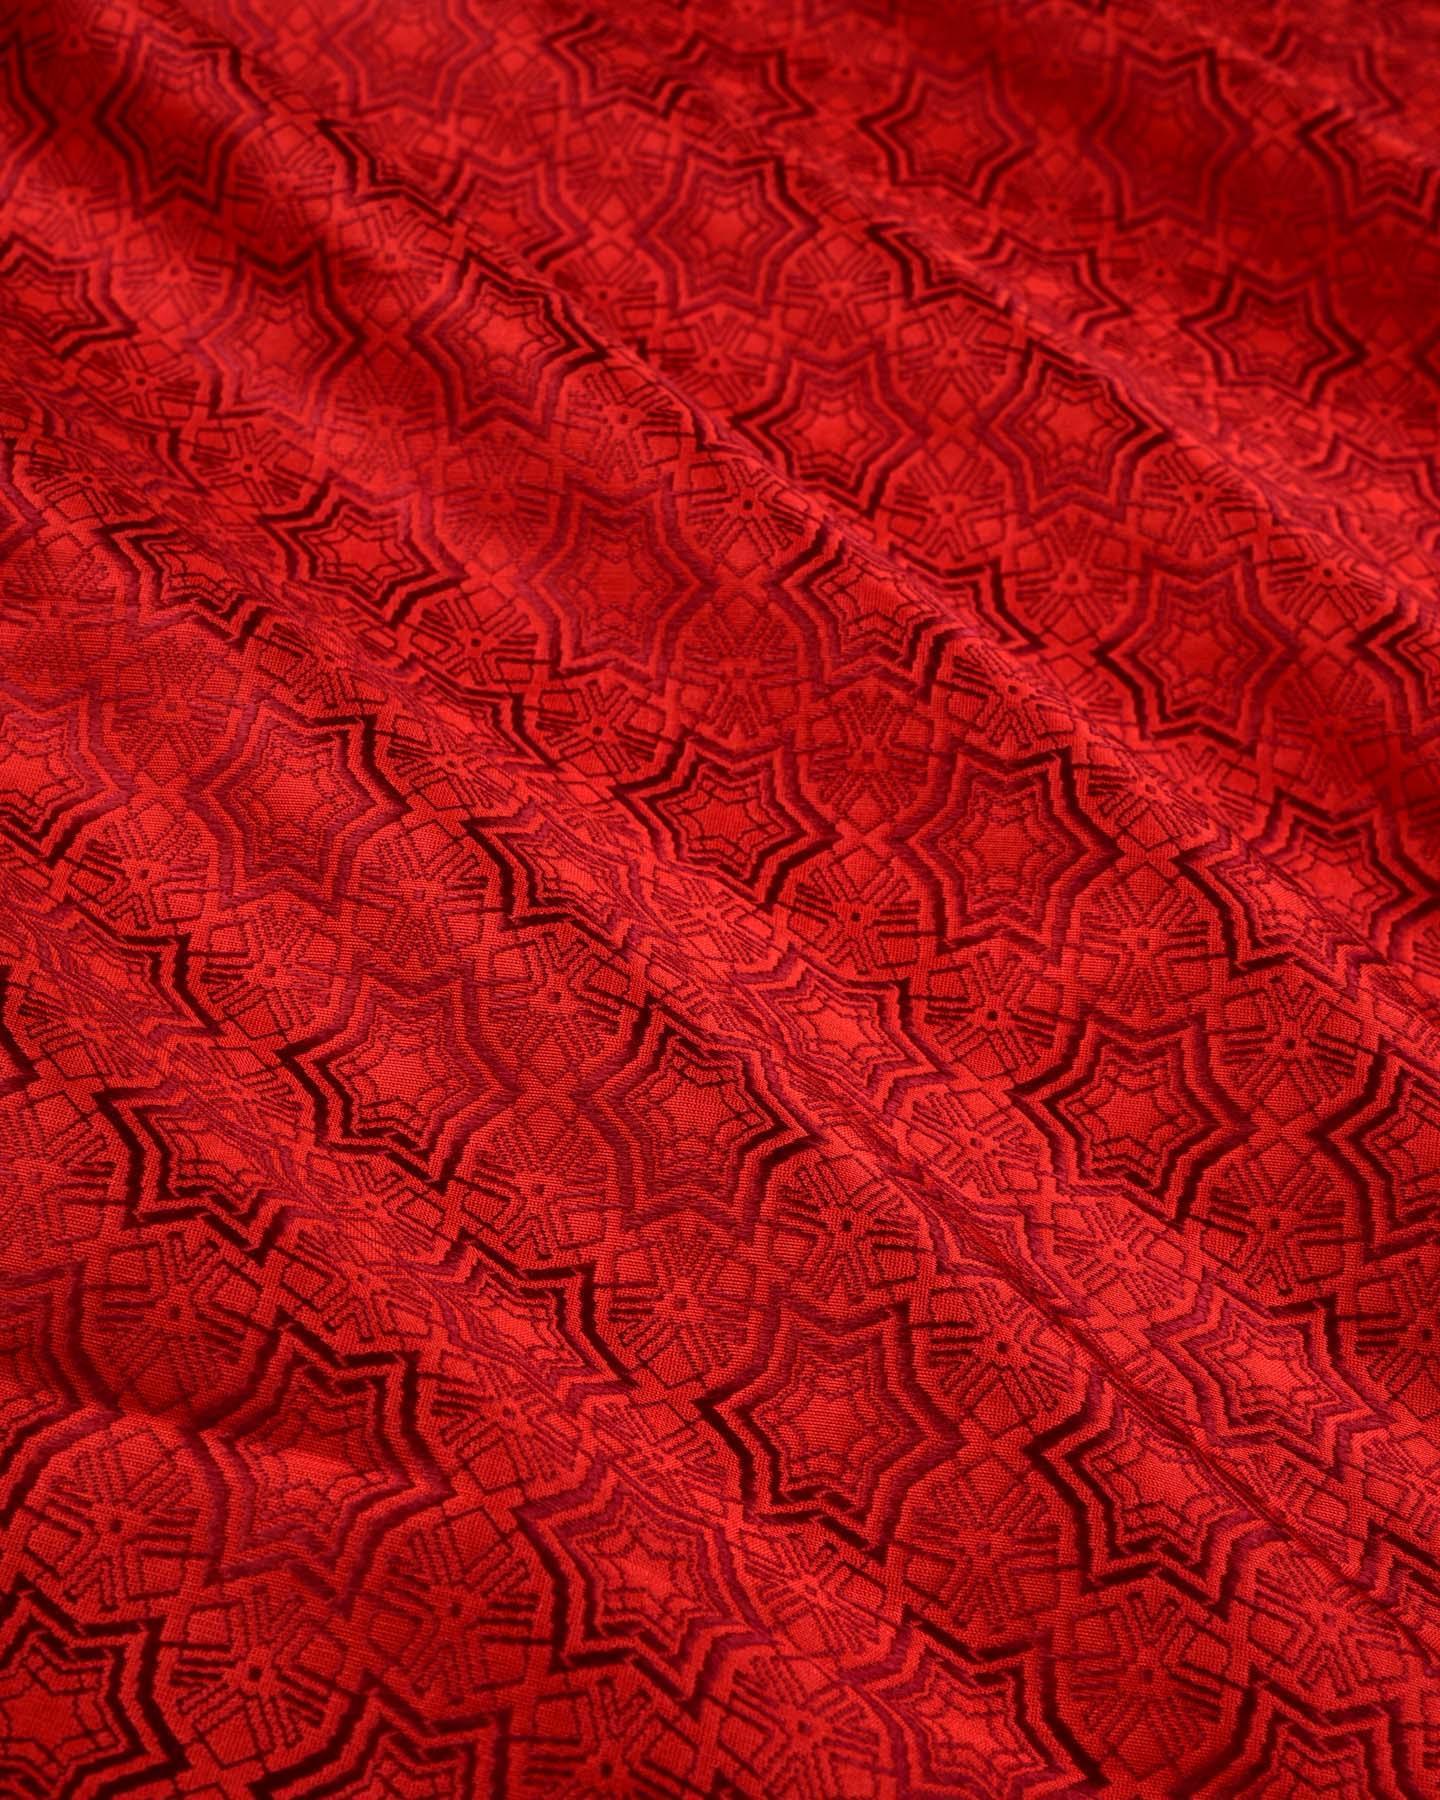 Red Banarasi Kaleidoscopic Stars Tanchoi Handwoven Katan Silk Fabric - By HolyWeaves, Benares